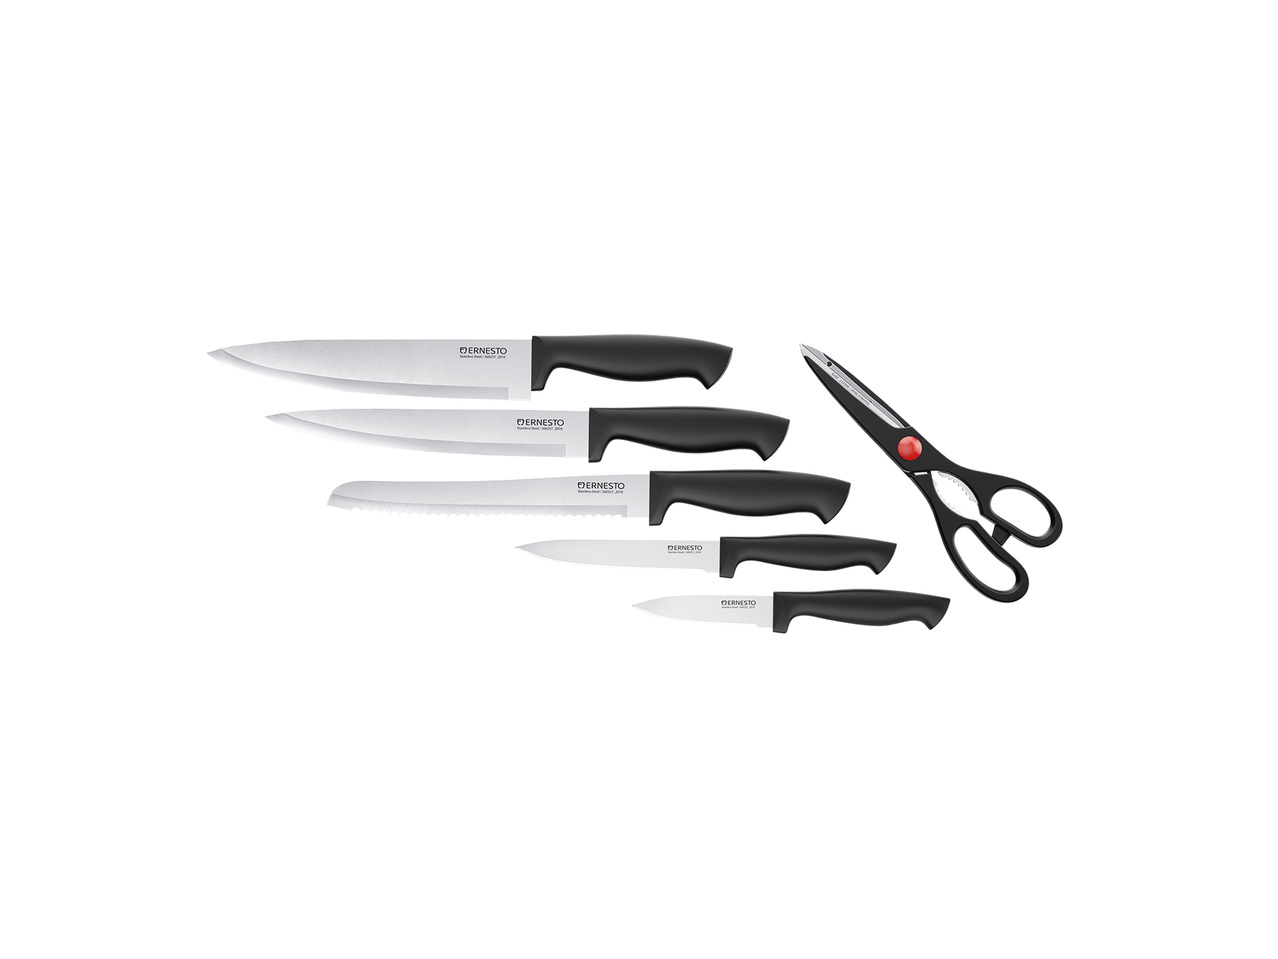 ERNESTO® Noże i nożyczki w bloku , cena 19 PLN 

- w zestawie: blok, 5 noży ...